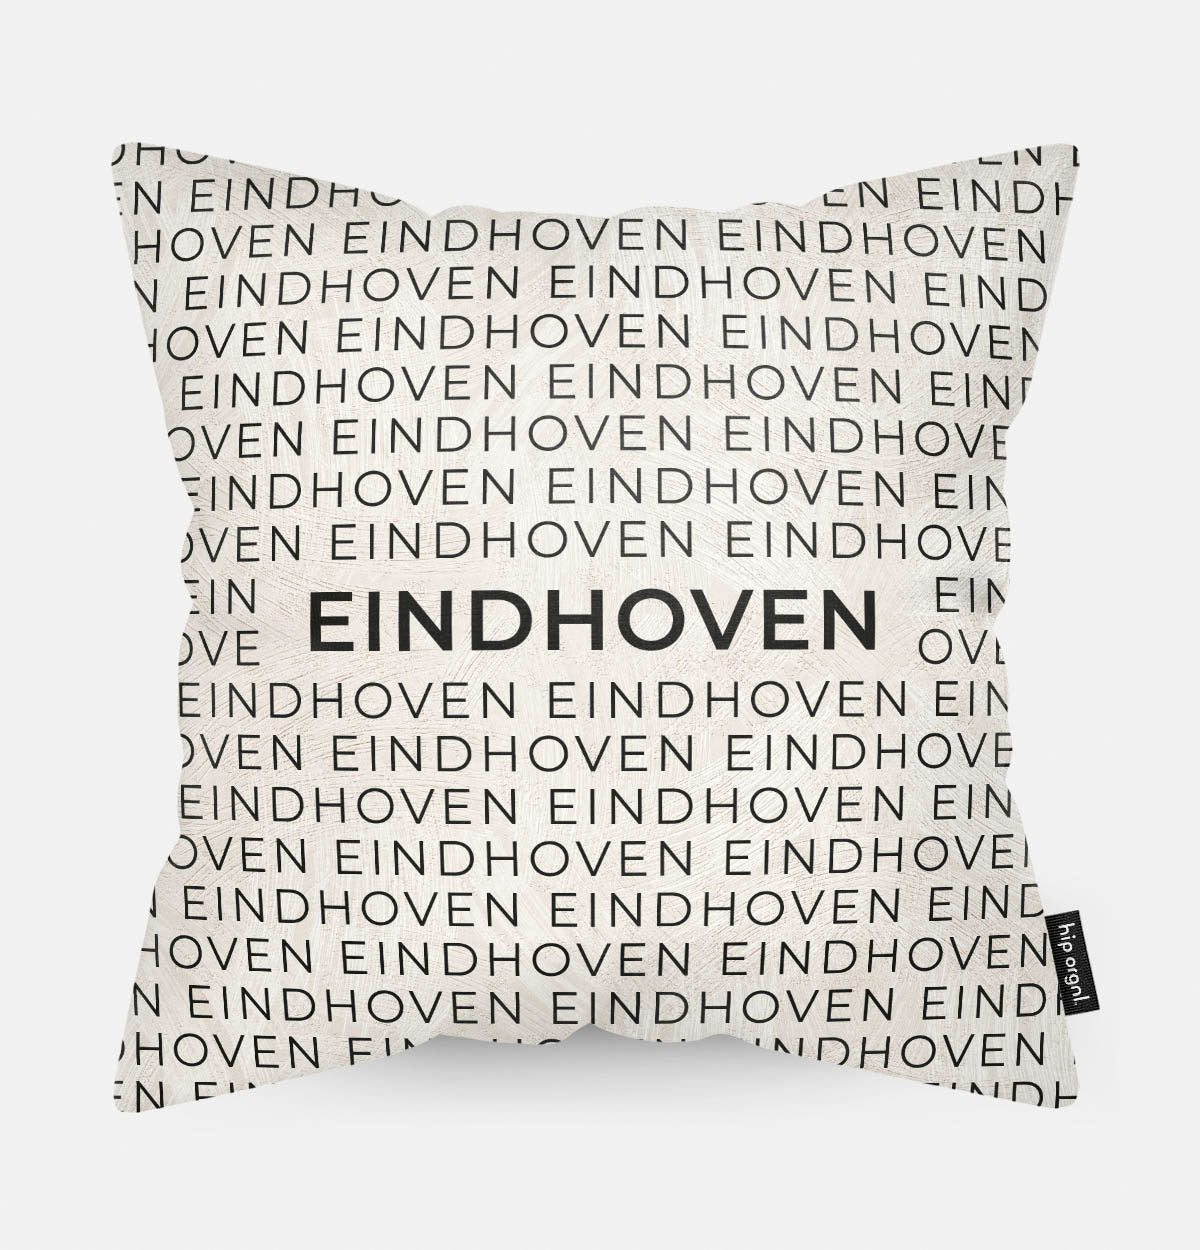 Sierkussen met stad en map Eindhoven in tekst en zwart wit